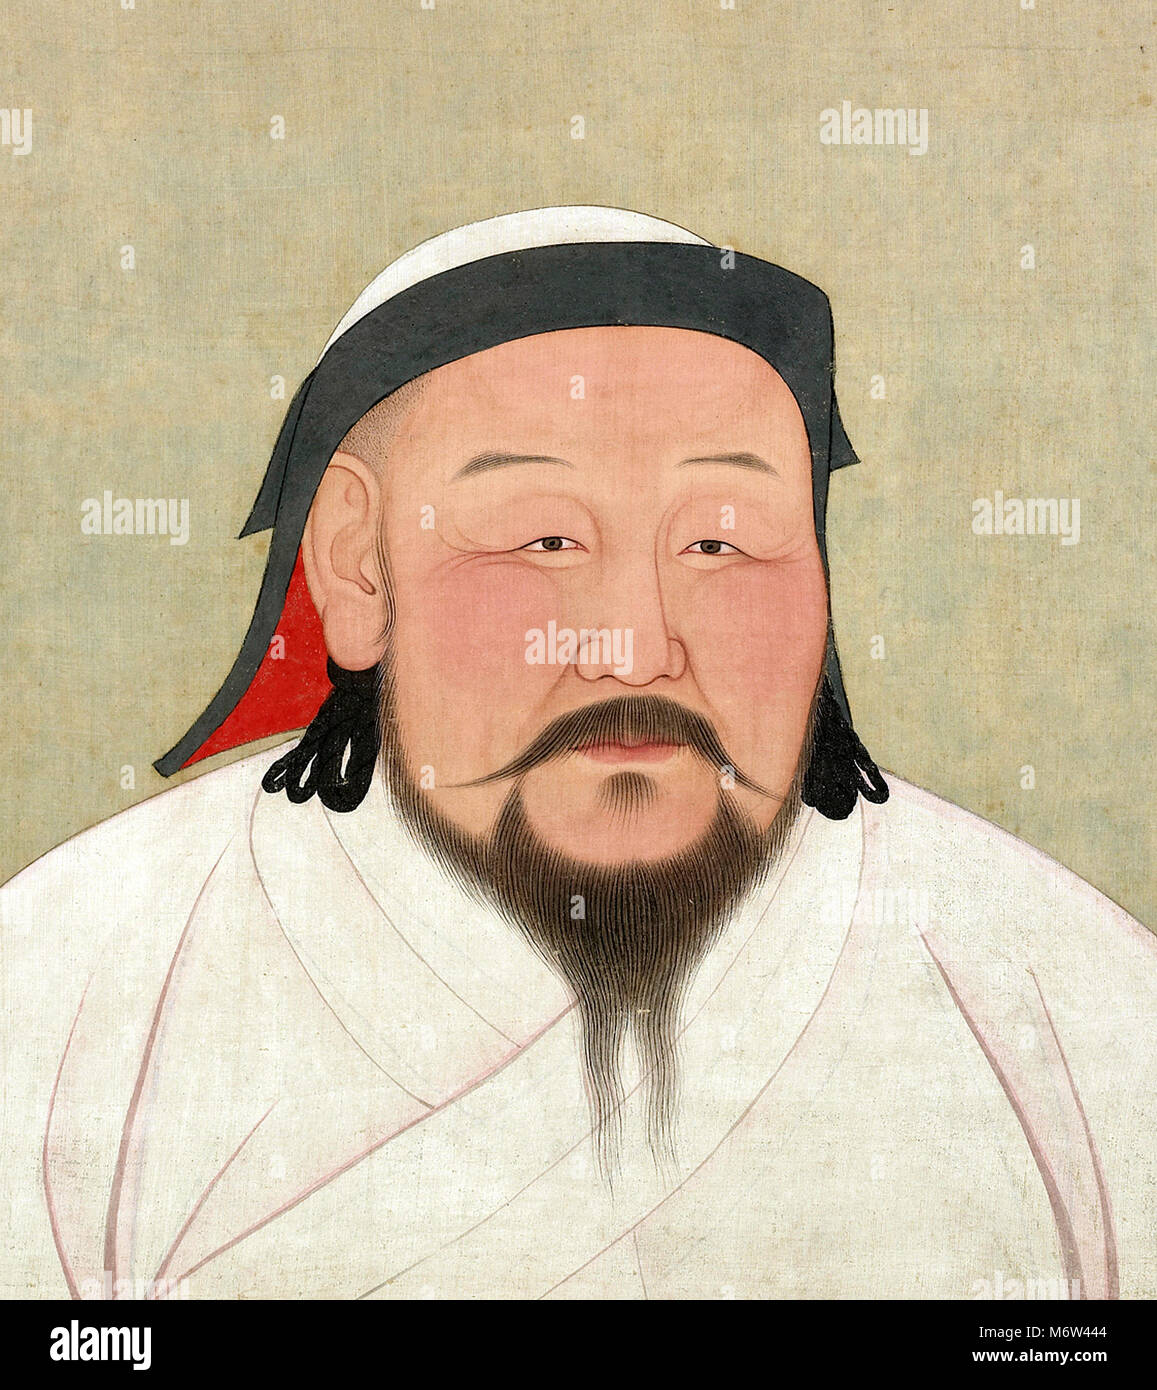 Kublai Khan (c.1215-1294), ritratto del quinto Khagan (Gran Khan) dell'Impero Mongolo, vernice e inchiostro su seta, 1294 Foto Stock